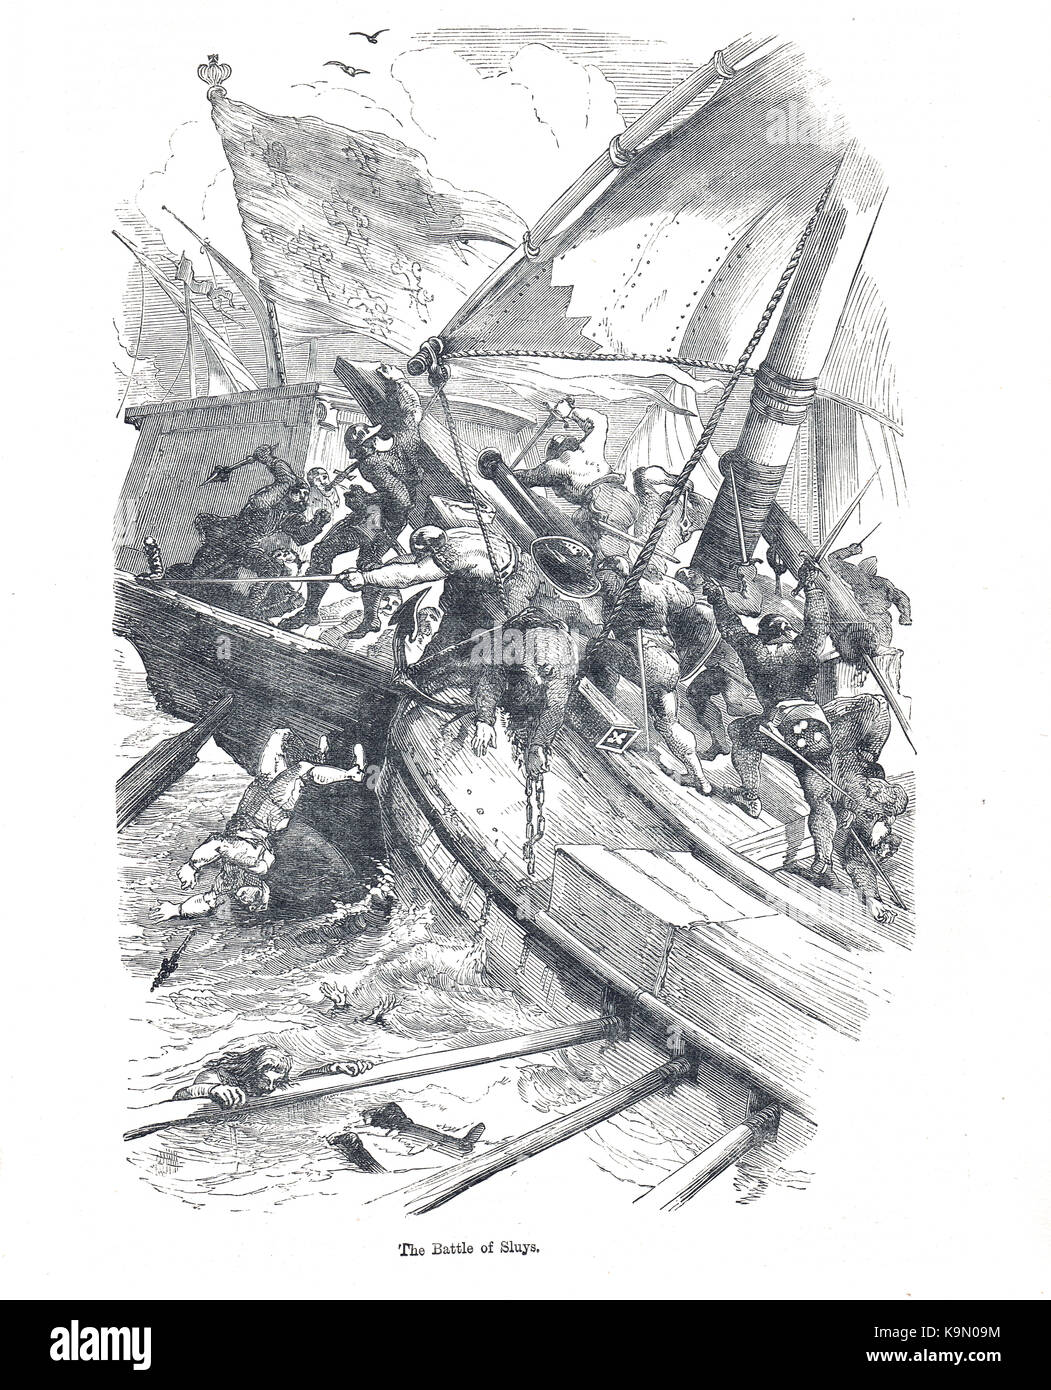 La batalla de sluys, 24 de junio de 1340. mar batalla entre Inglaterra y Francia, uno de la apertura de los conflictos de la guerra de los cien años Foto de stock